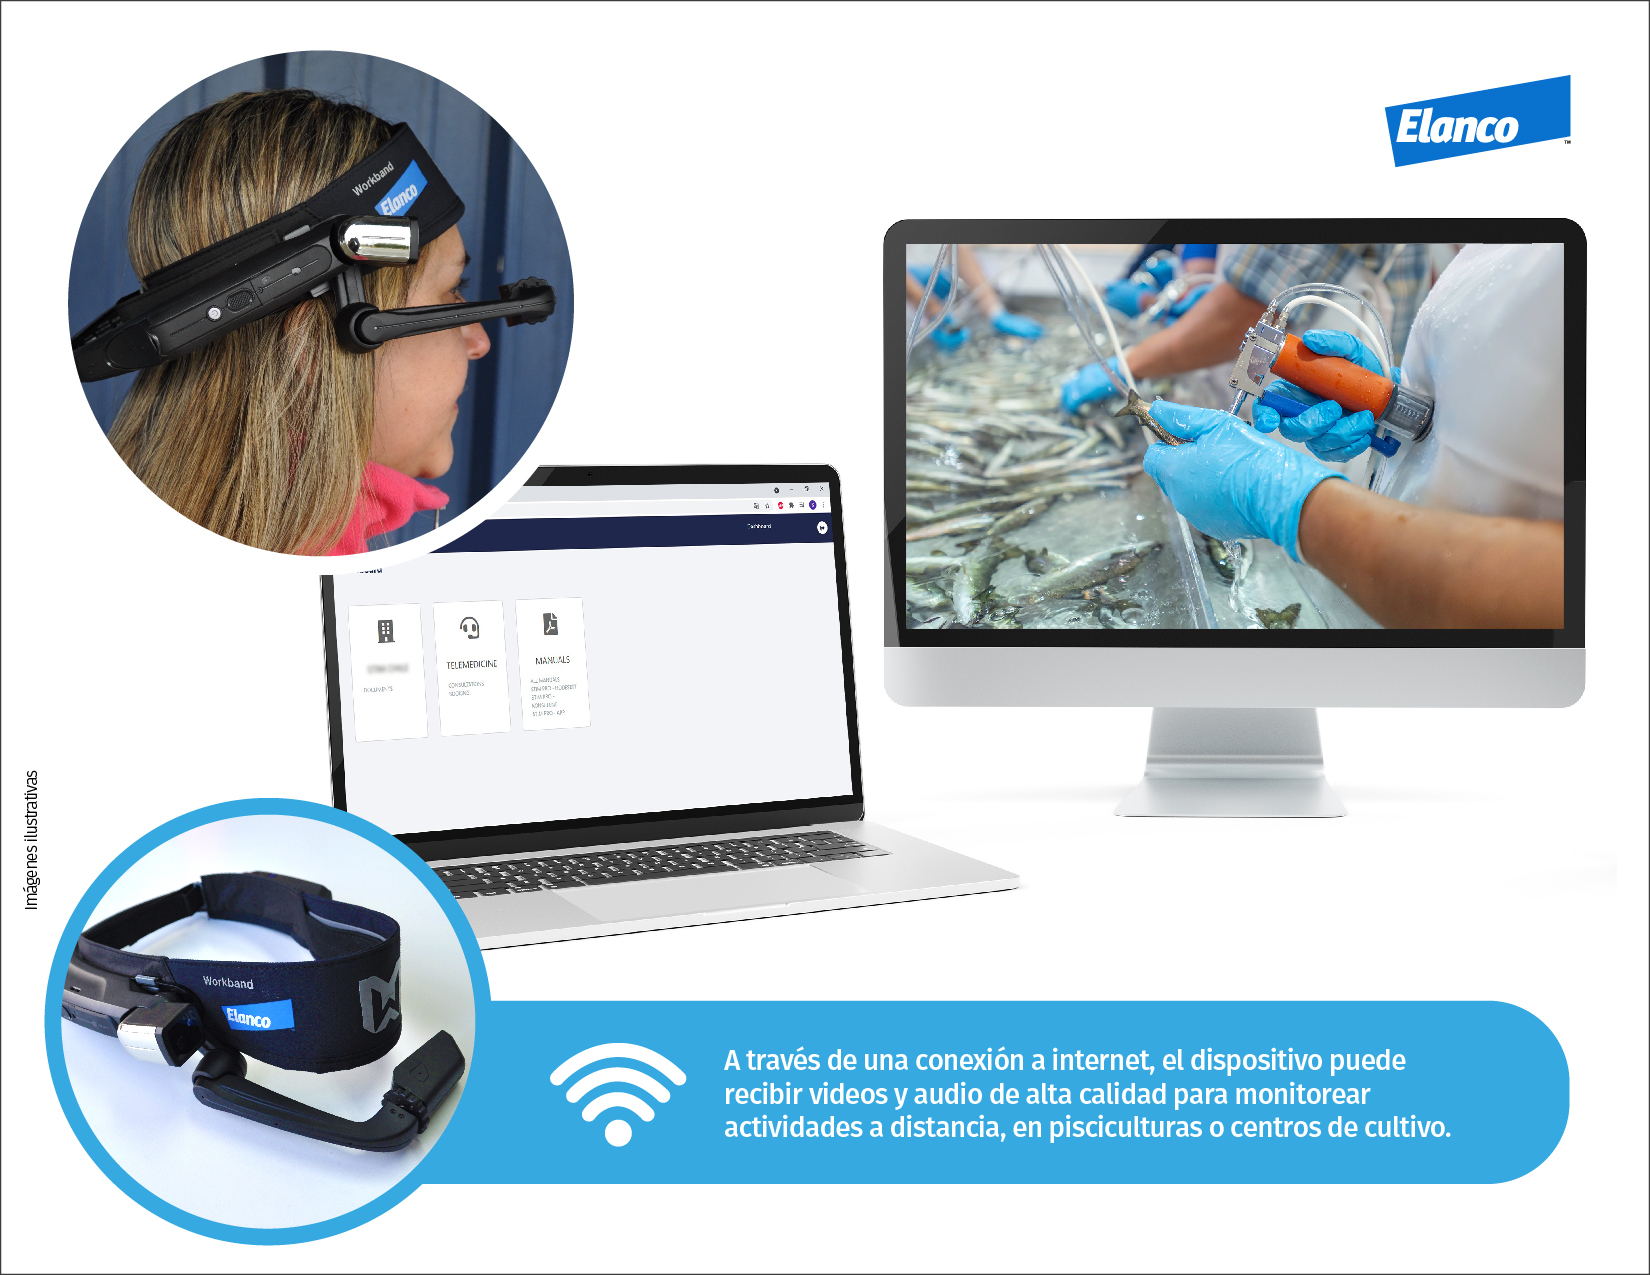 Innovación: Elanco ofrece a sus clientes equipos de telemedicina